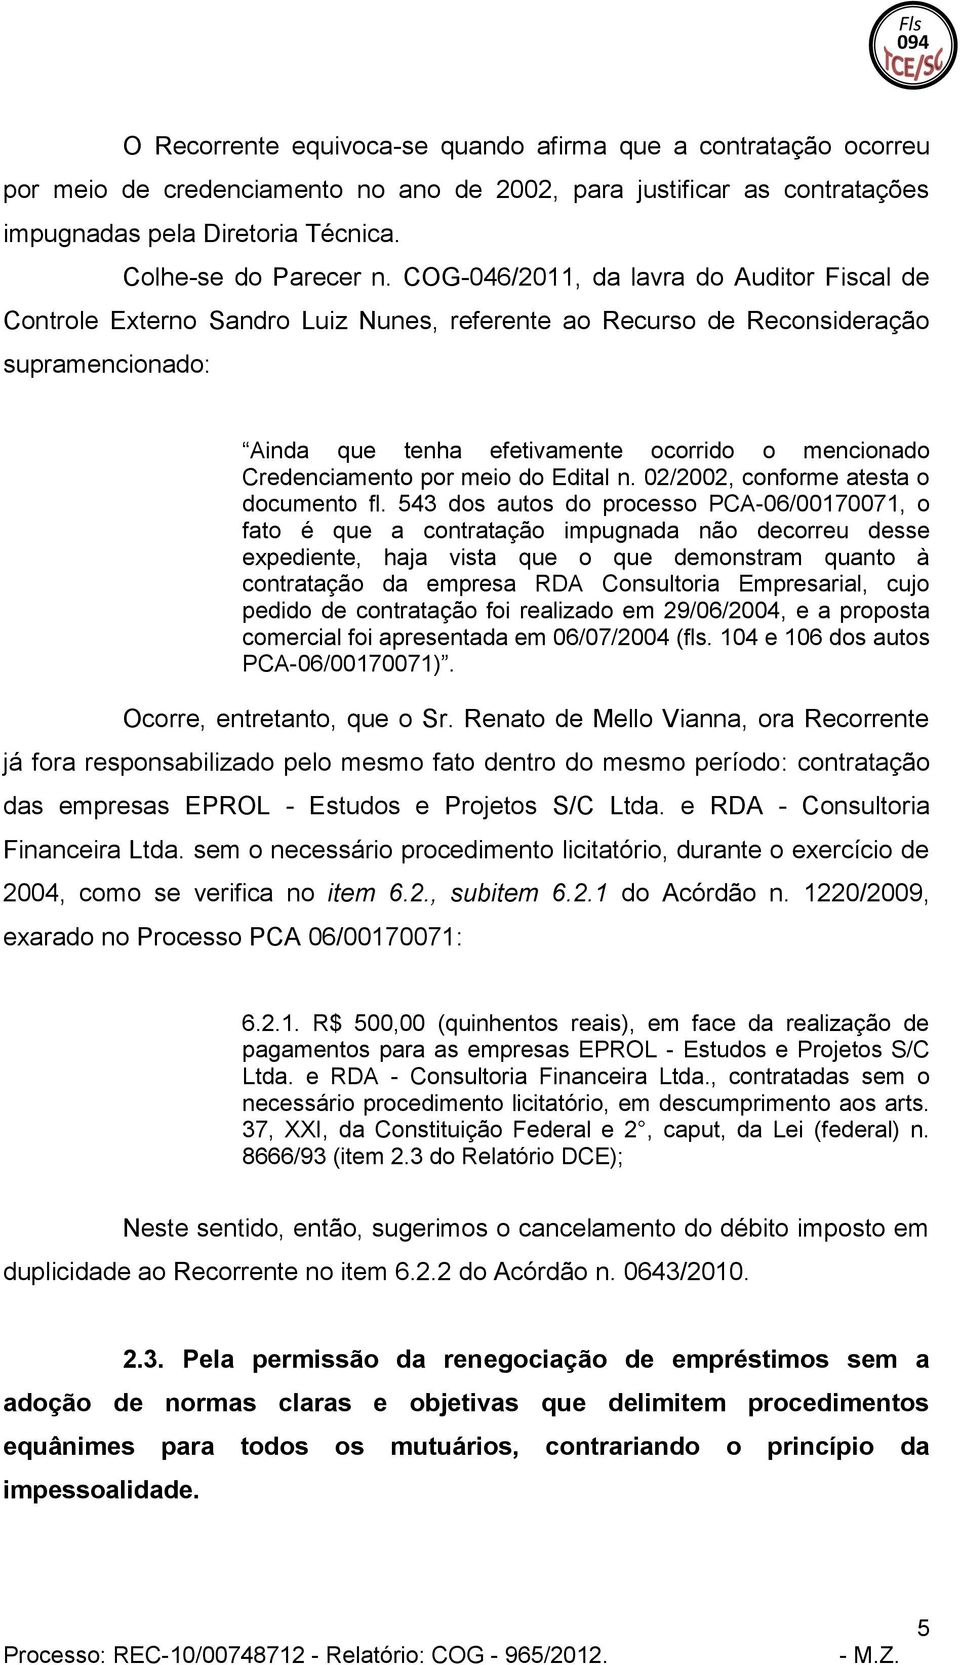 COG-046/2011, da lavra do Auditor Fiscal de Controle Externo Sandro Luiz Nunes, referente ao Recurso de Reconsideração supramencionado: Ainda que tenha efetivamente ocorrido o mencionado